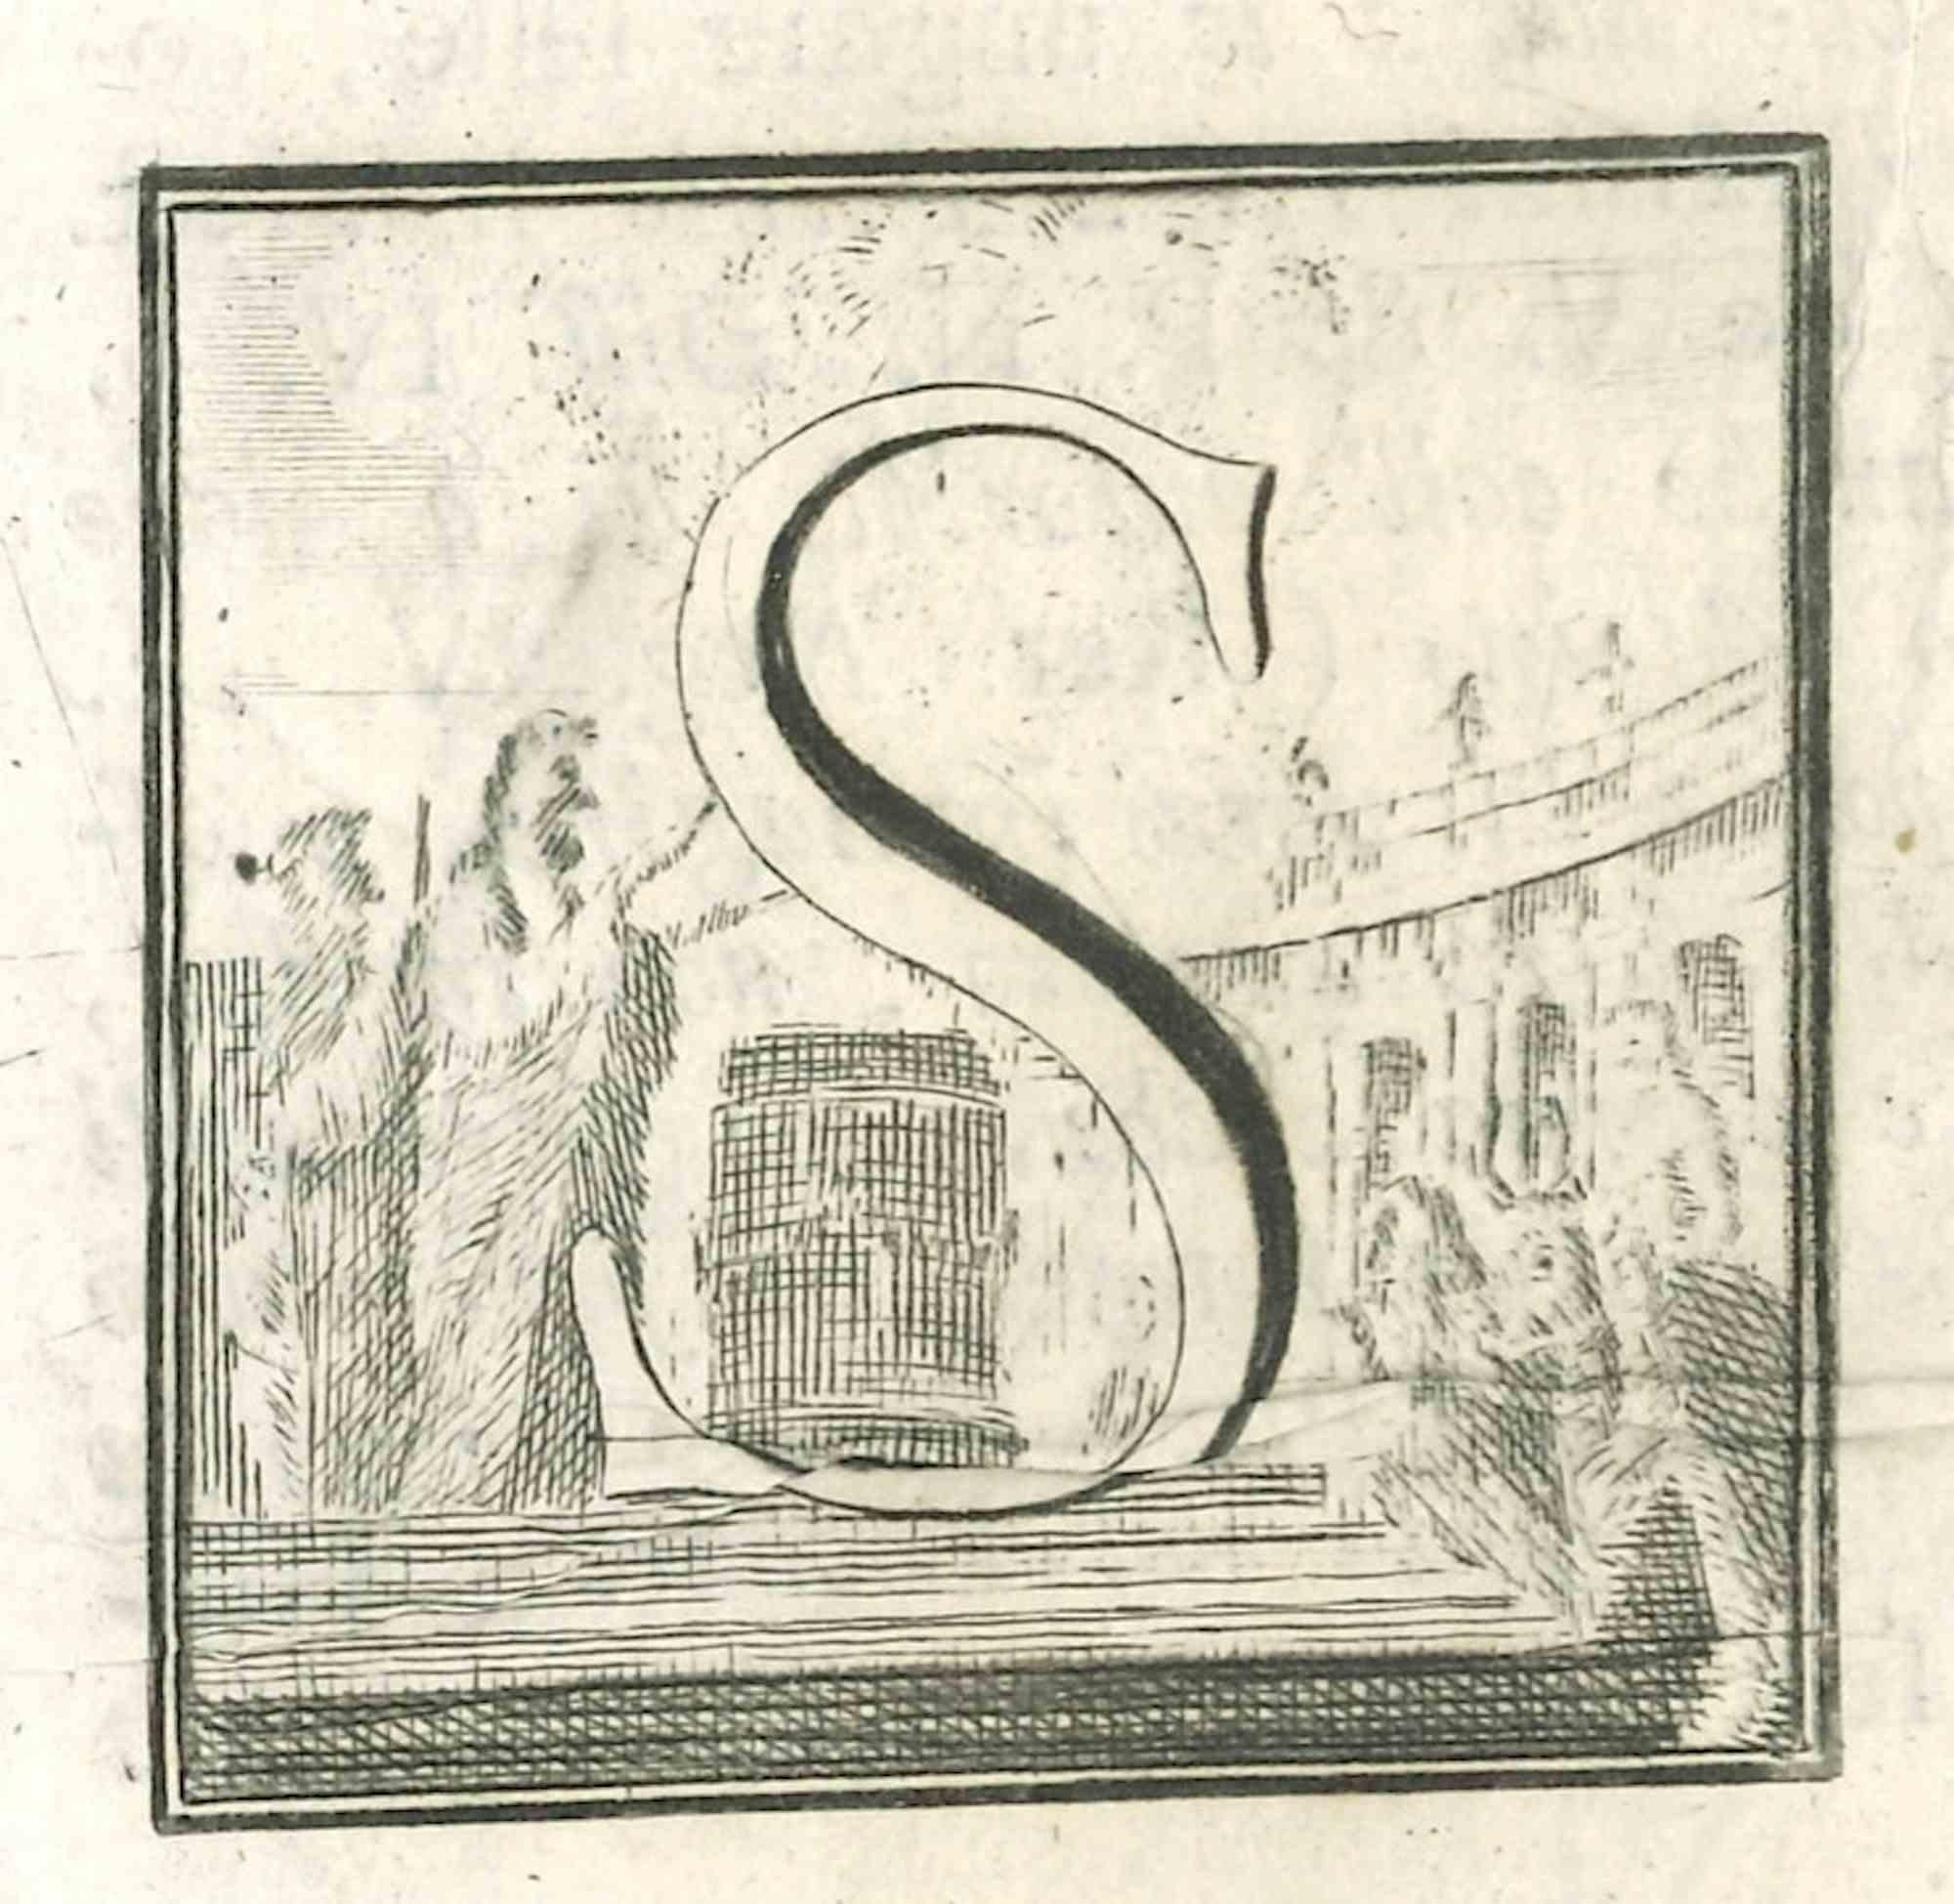 Lettre de l'alphabet S,  de la série "Antiquités d'Herculanum", est une gravure sur papier réalisée par divers auteurs au 18ème siècle.

Bonnes conditions.

La gravure appartient à la suite d'estampes "Antiquités d'Herculanum exposées" (titre